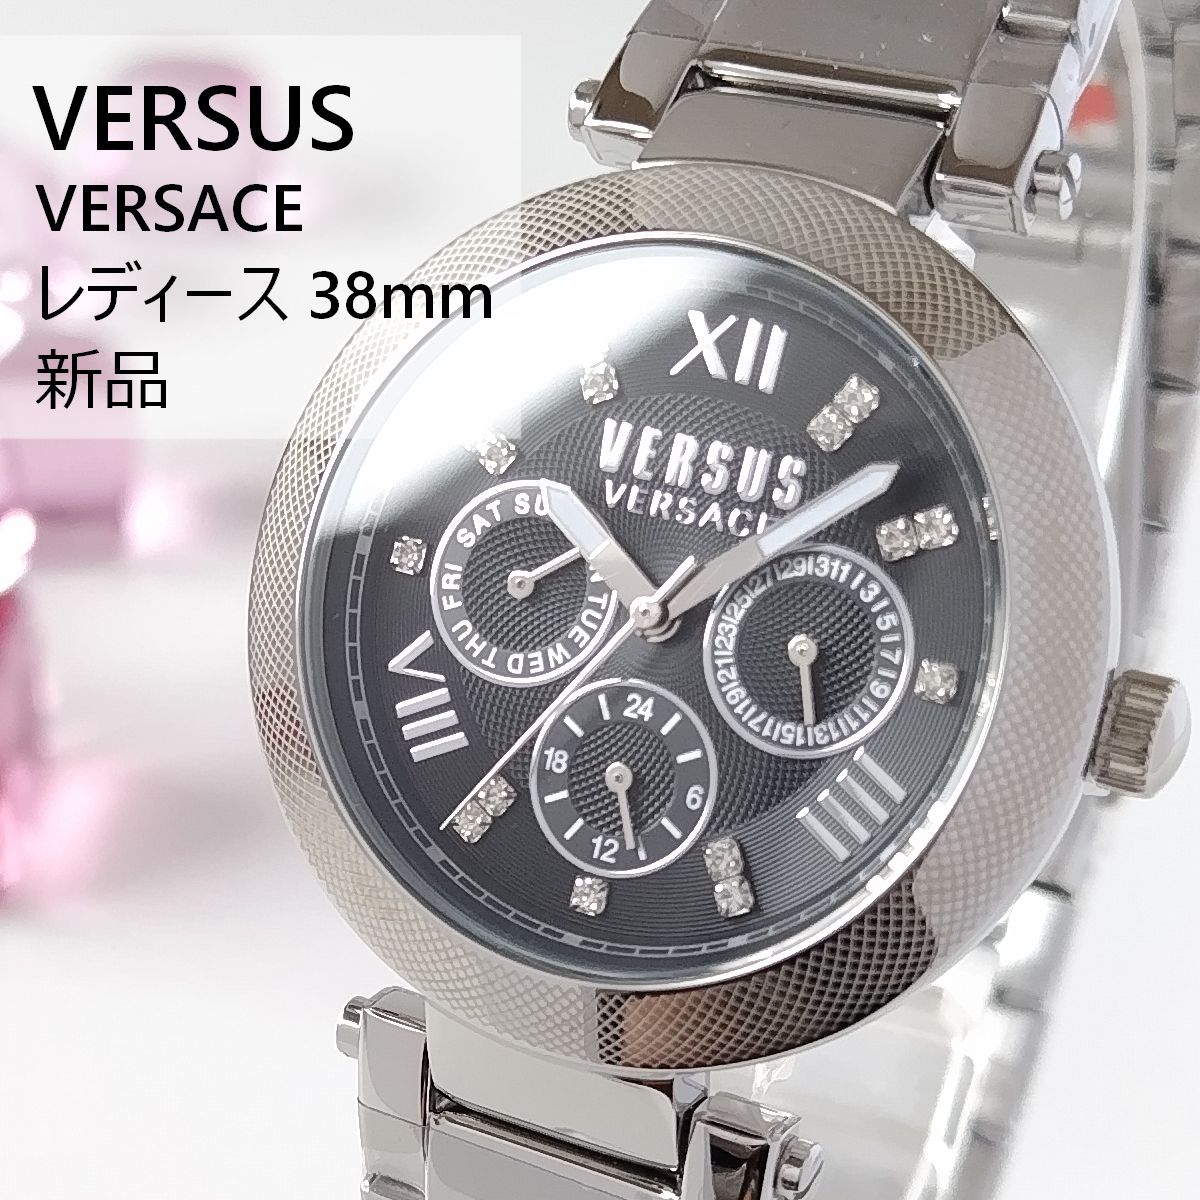 シルバー/ブラック新品ヴェルサス・ヴェルサーチ腕時計レディース黒クォーツ約103gムーブメント